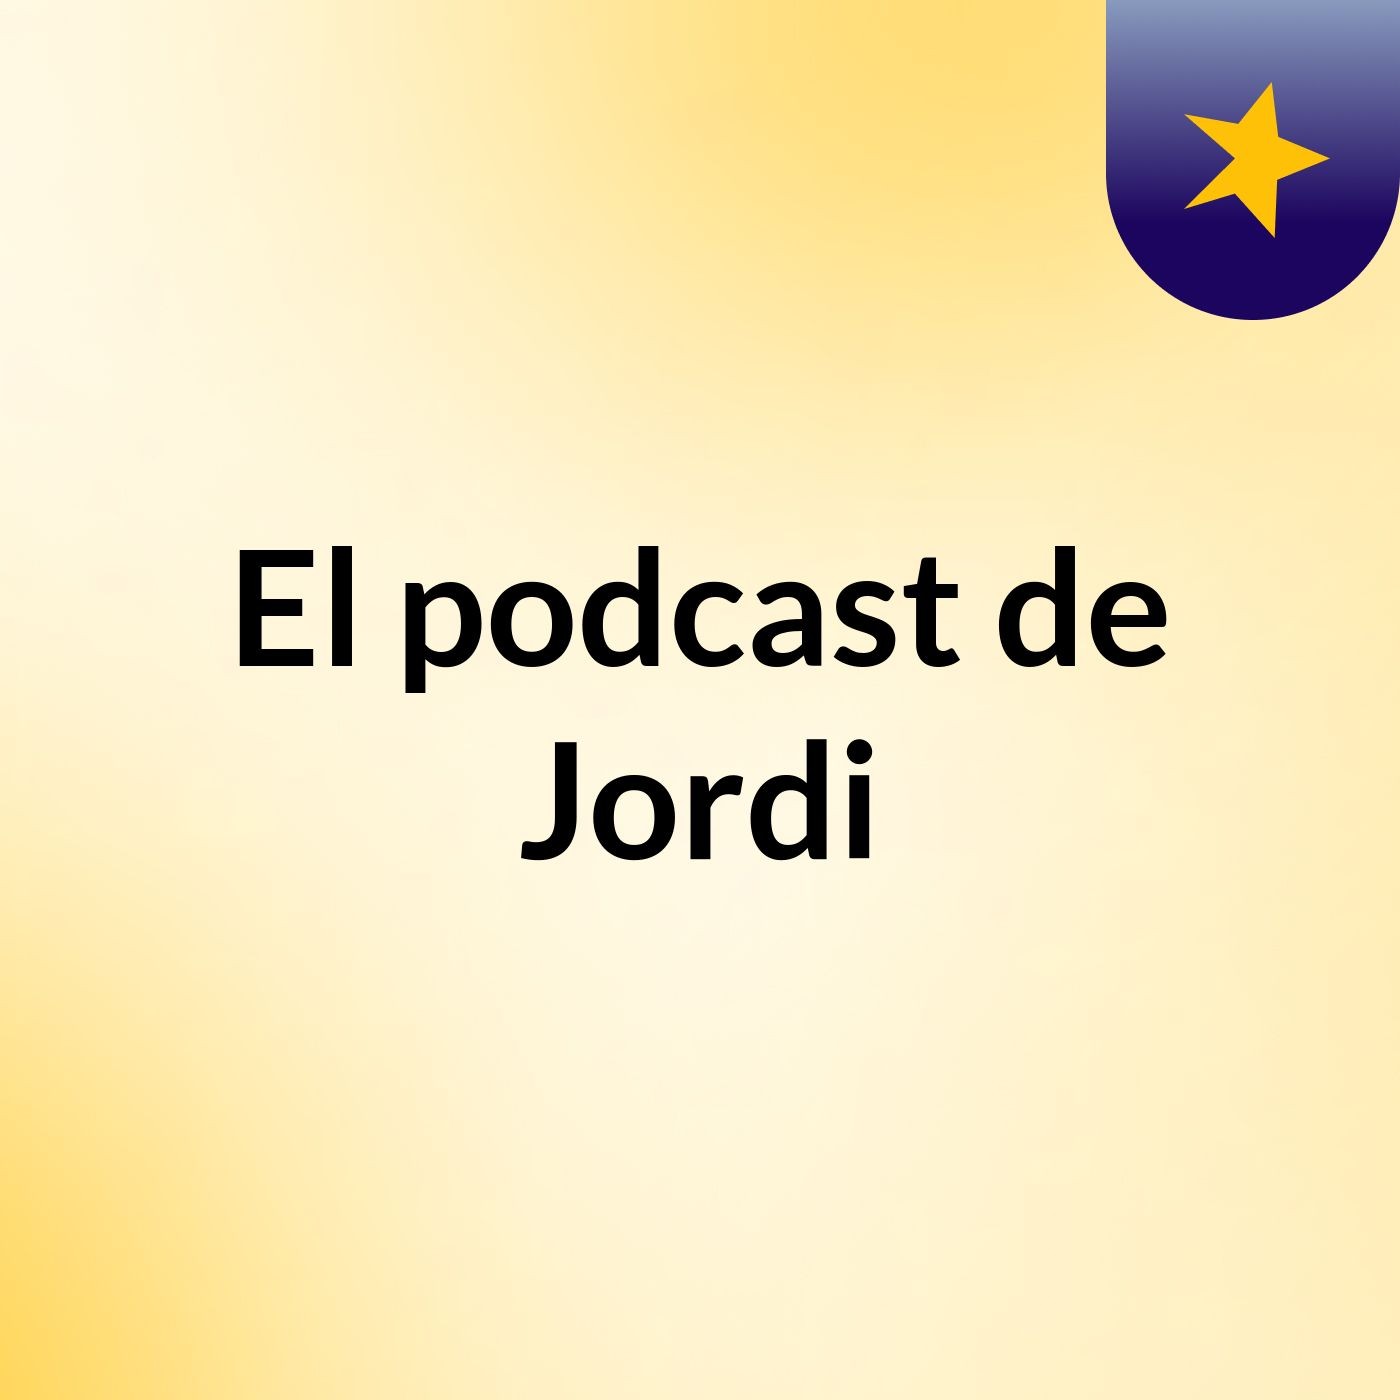 Episodio 8 - El podcast de Jordi